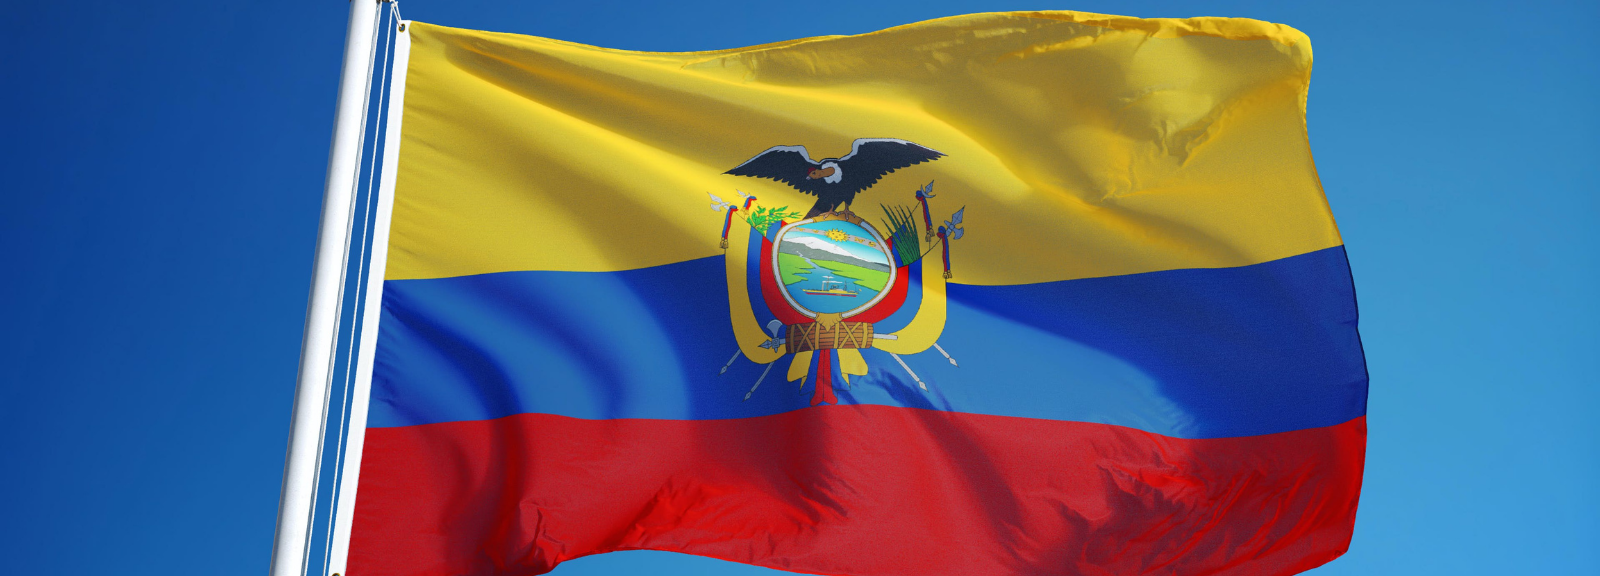 The Ecuadorian flag.